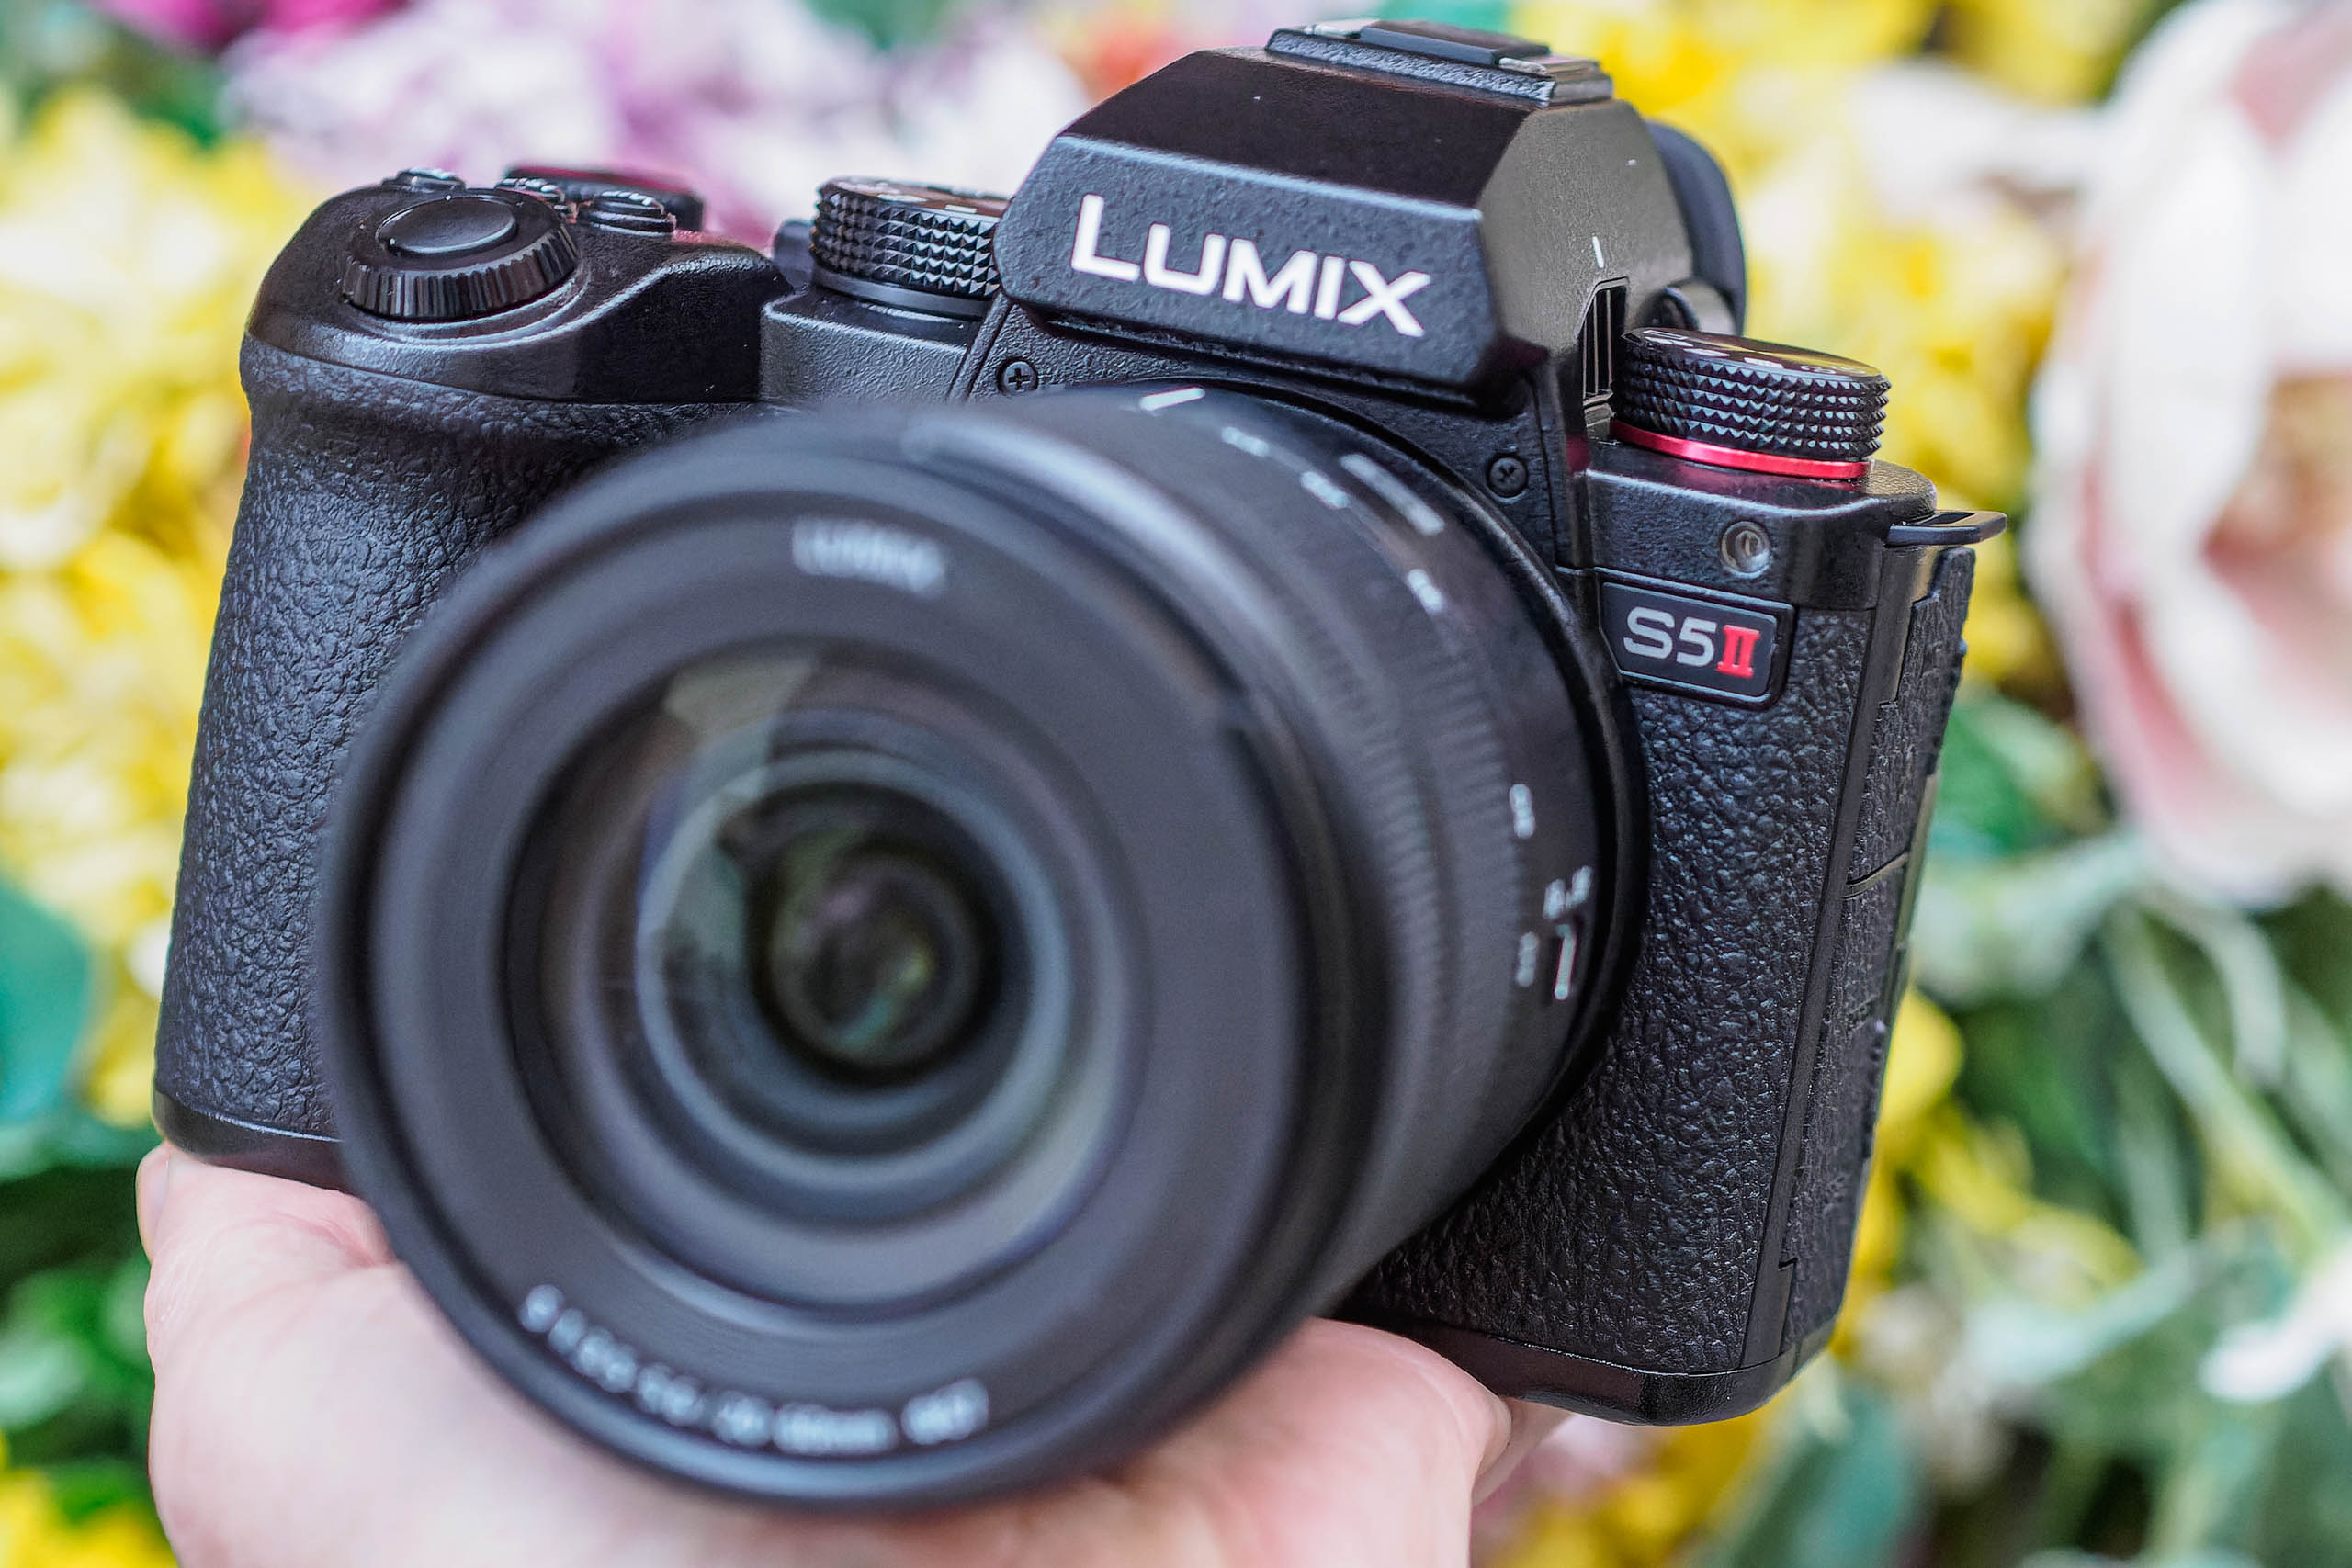  Panasonic LUMIX S5 Full Frame Mirrorless Camera, 4K